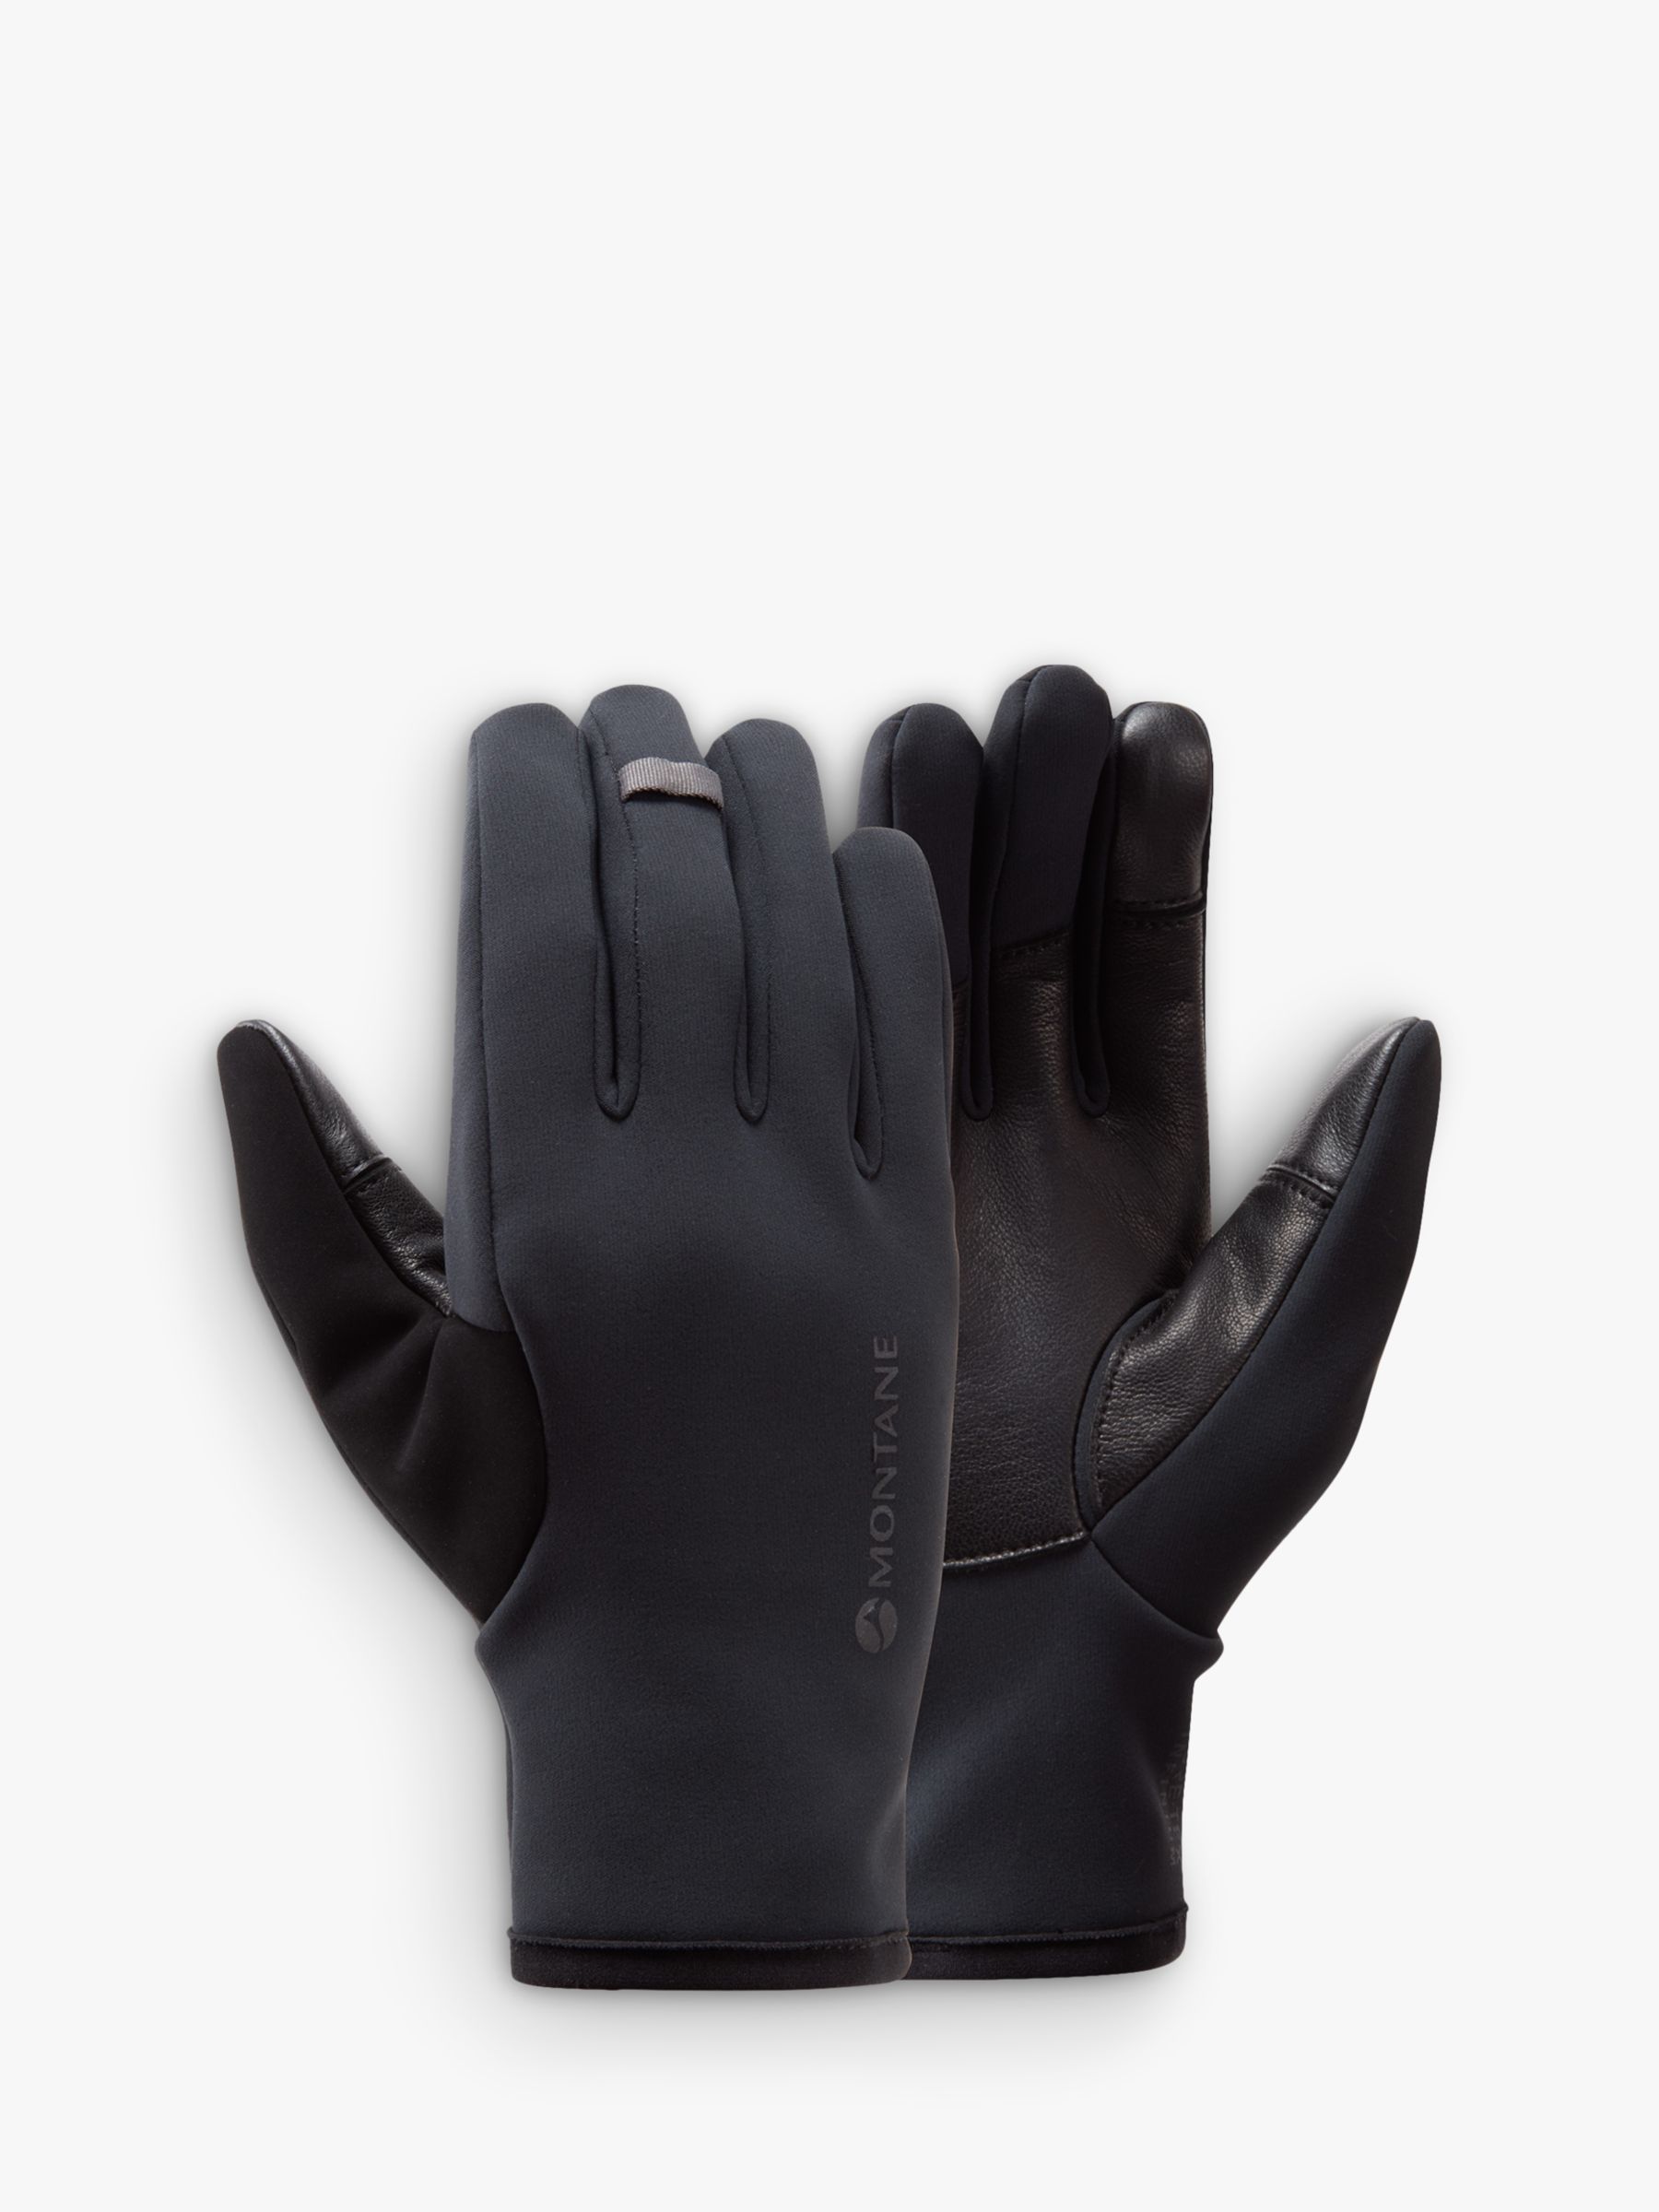 Montane Women's Windjammer Lite Windproof Gloves, Black, S